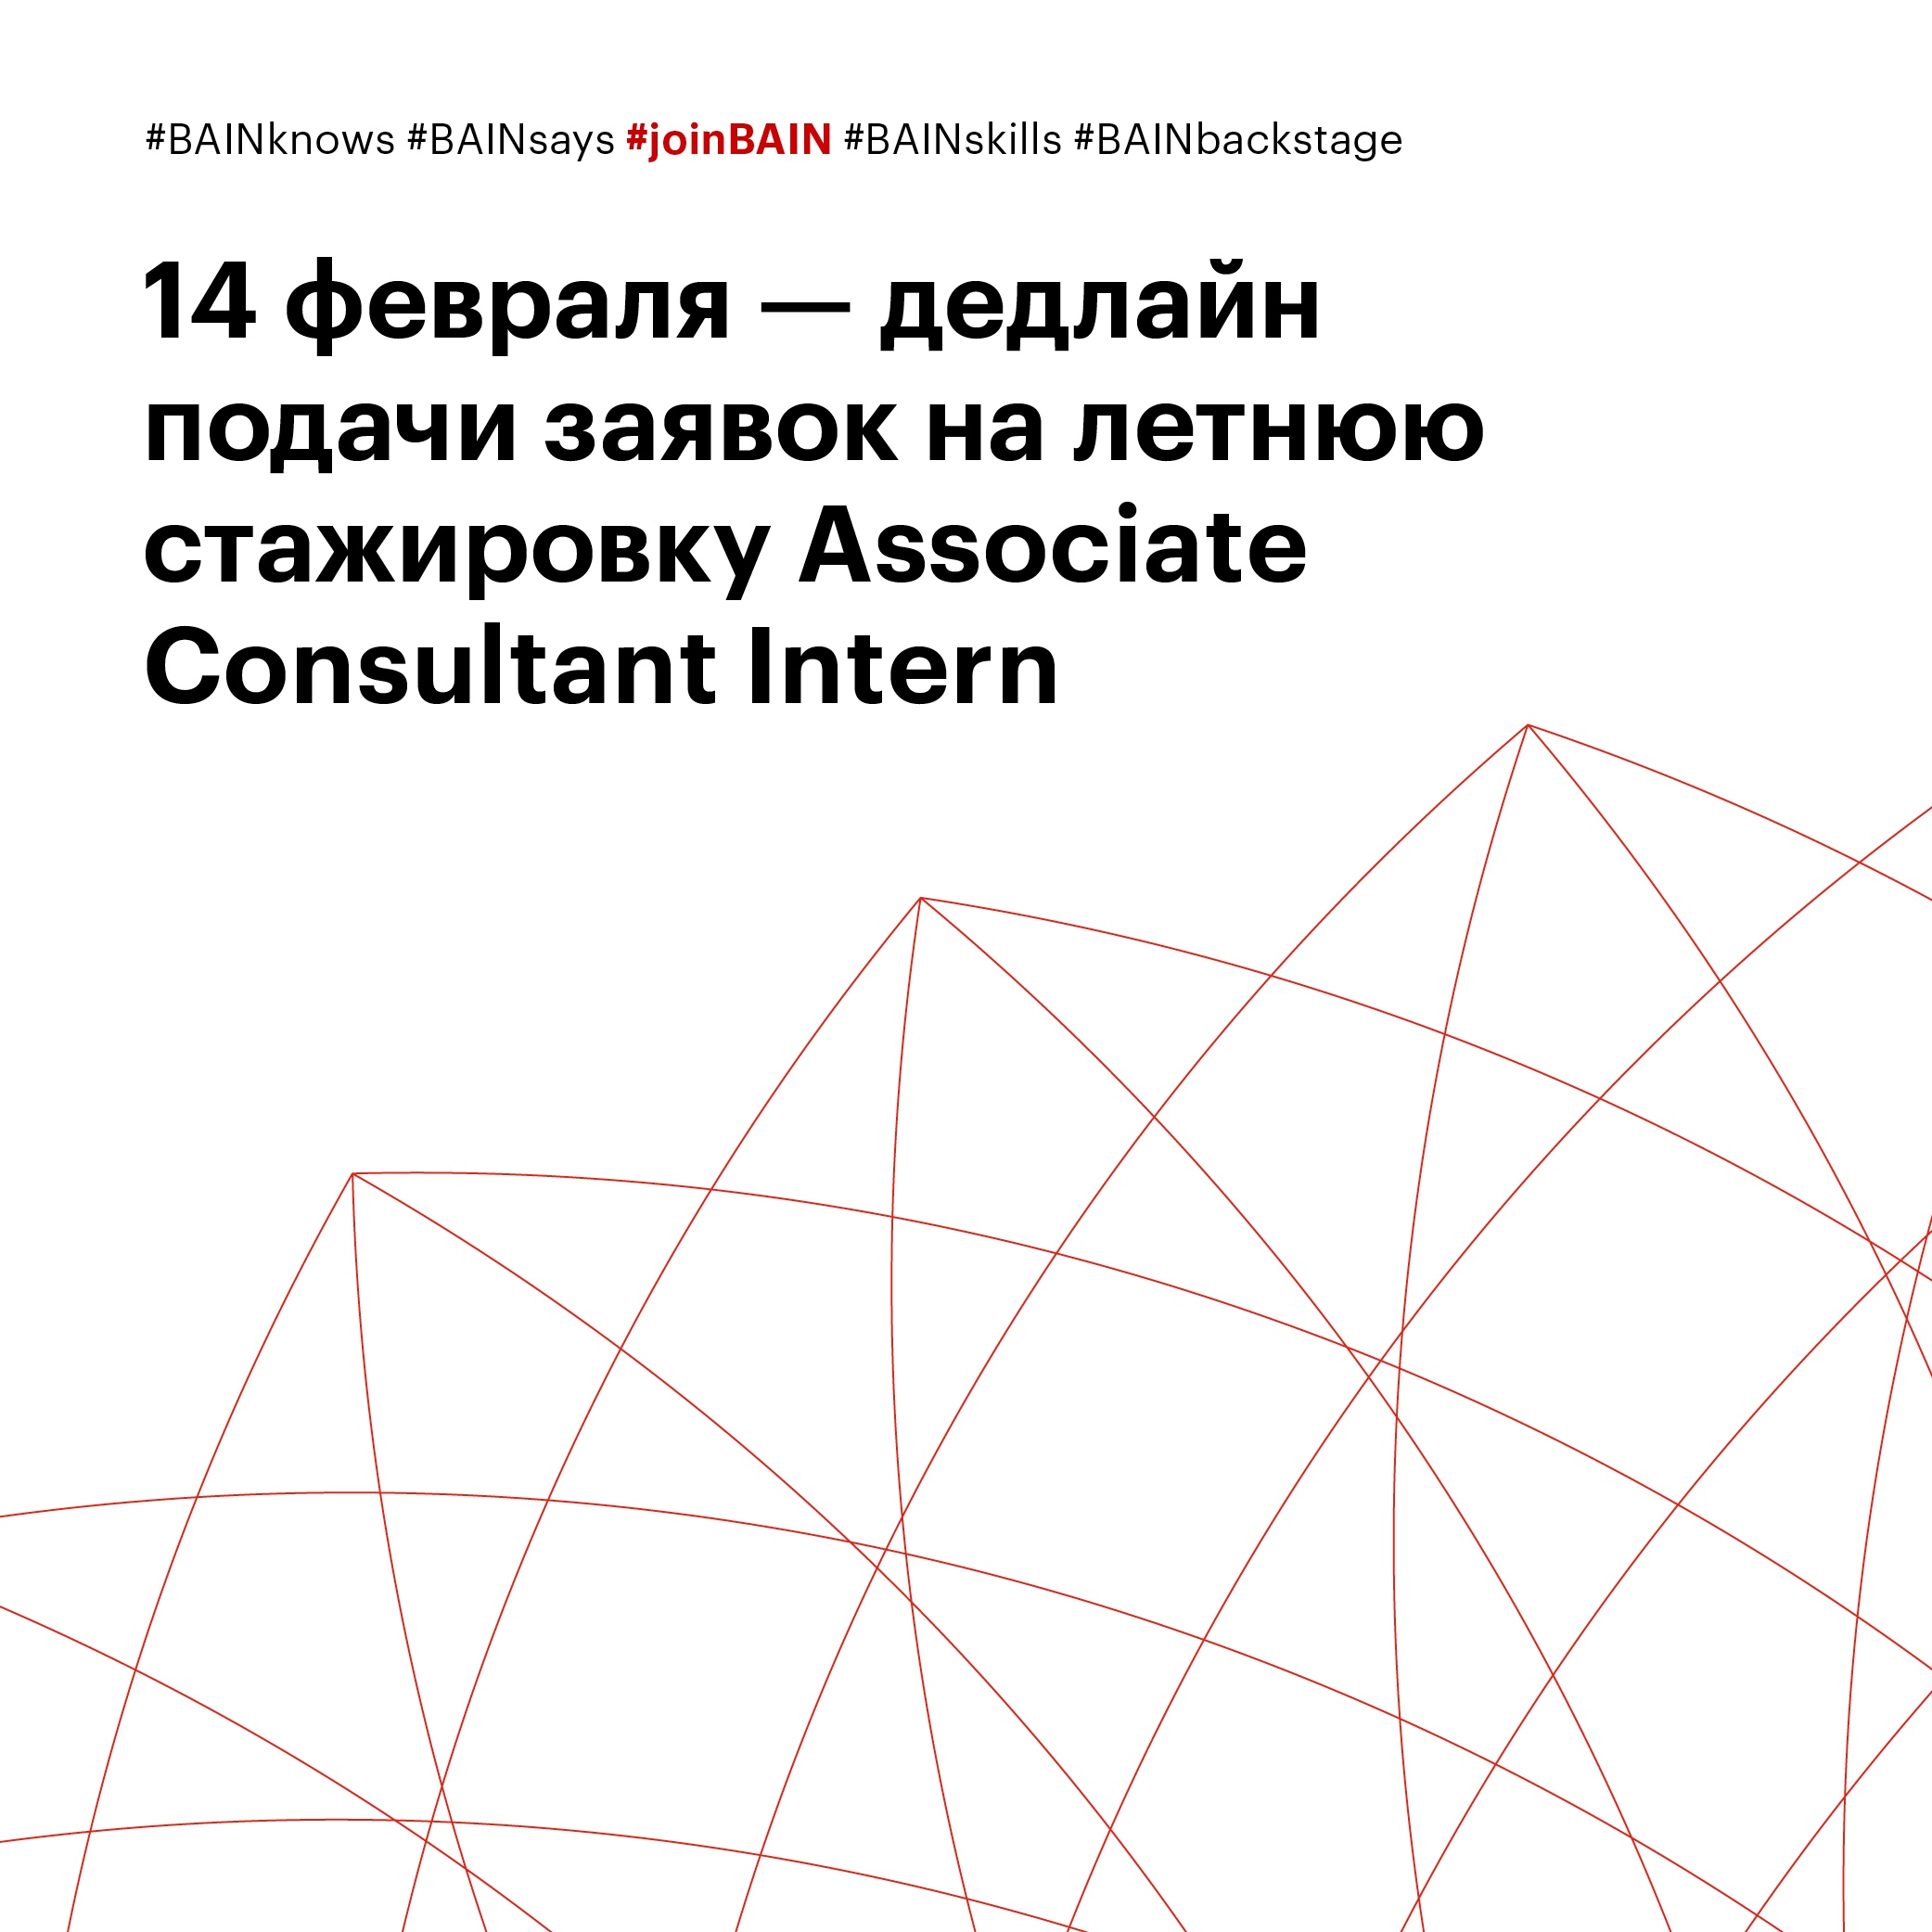 14 февраля. Дедлайн по подаче заявок на летнюю стажировку Associate Consultant Intern 2021.